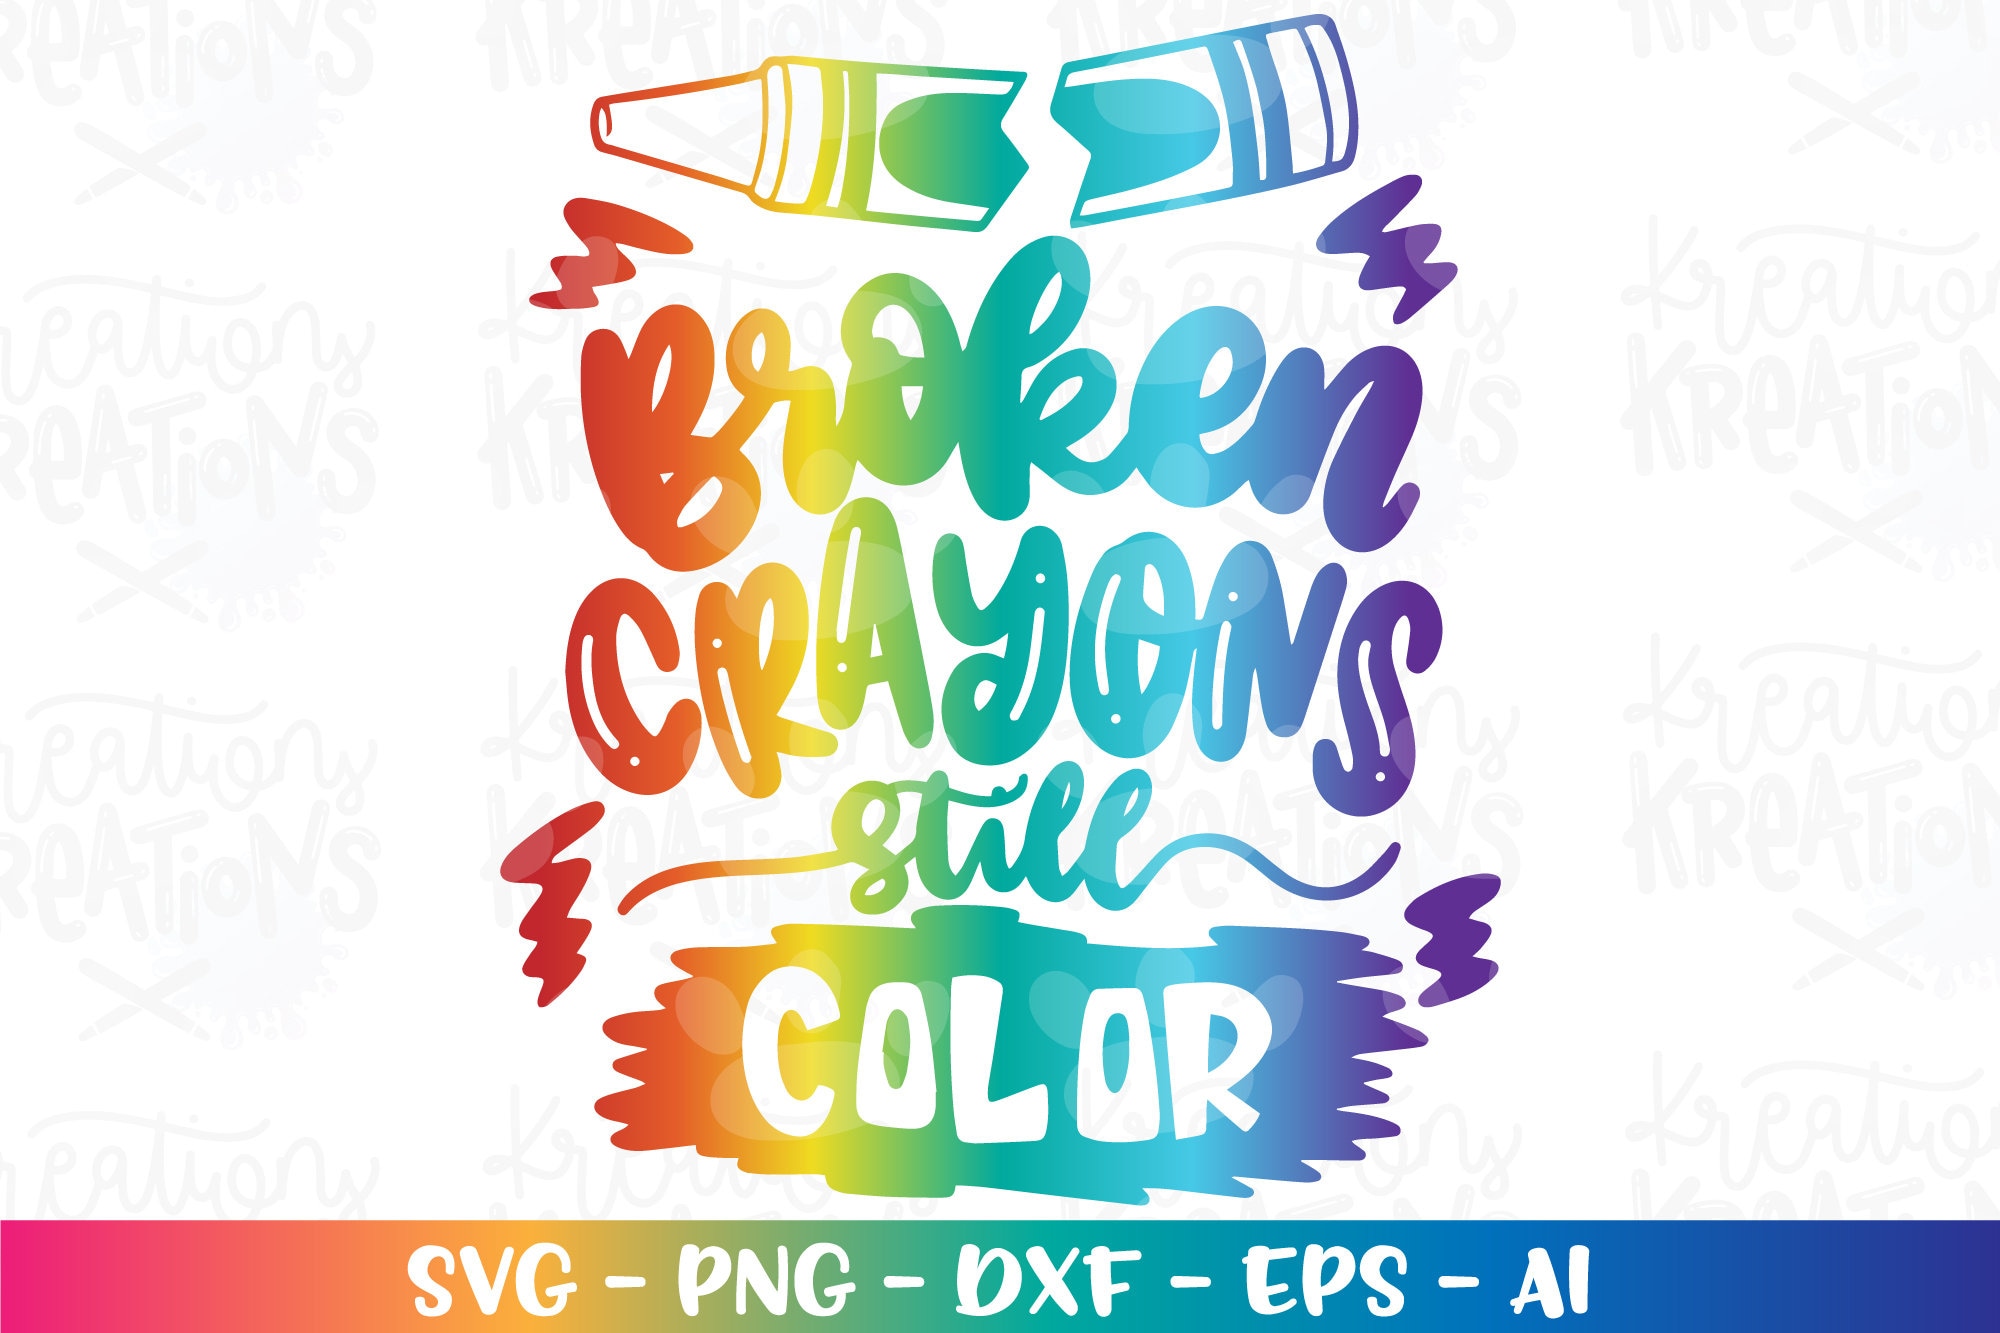 Crayons Svg, Crayons Png, School Svg, Crayons Silhouette, Crayons Jpg,  Crayons Eps, Crayons Pdf, Crayons Vector, 